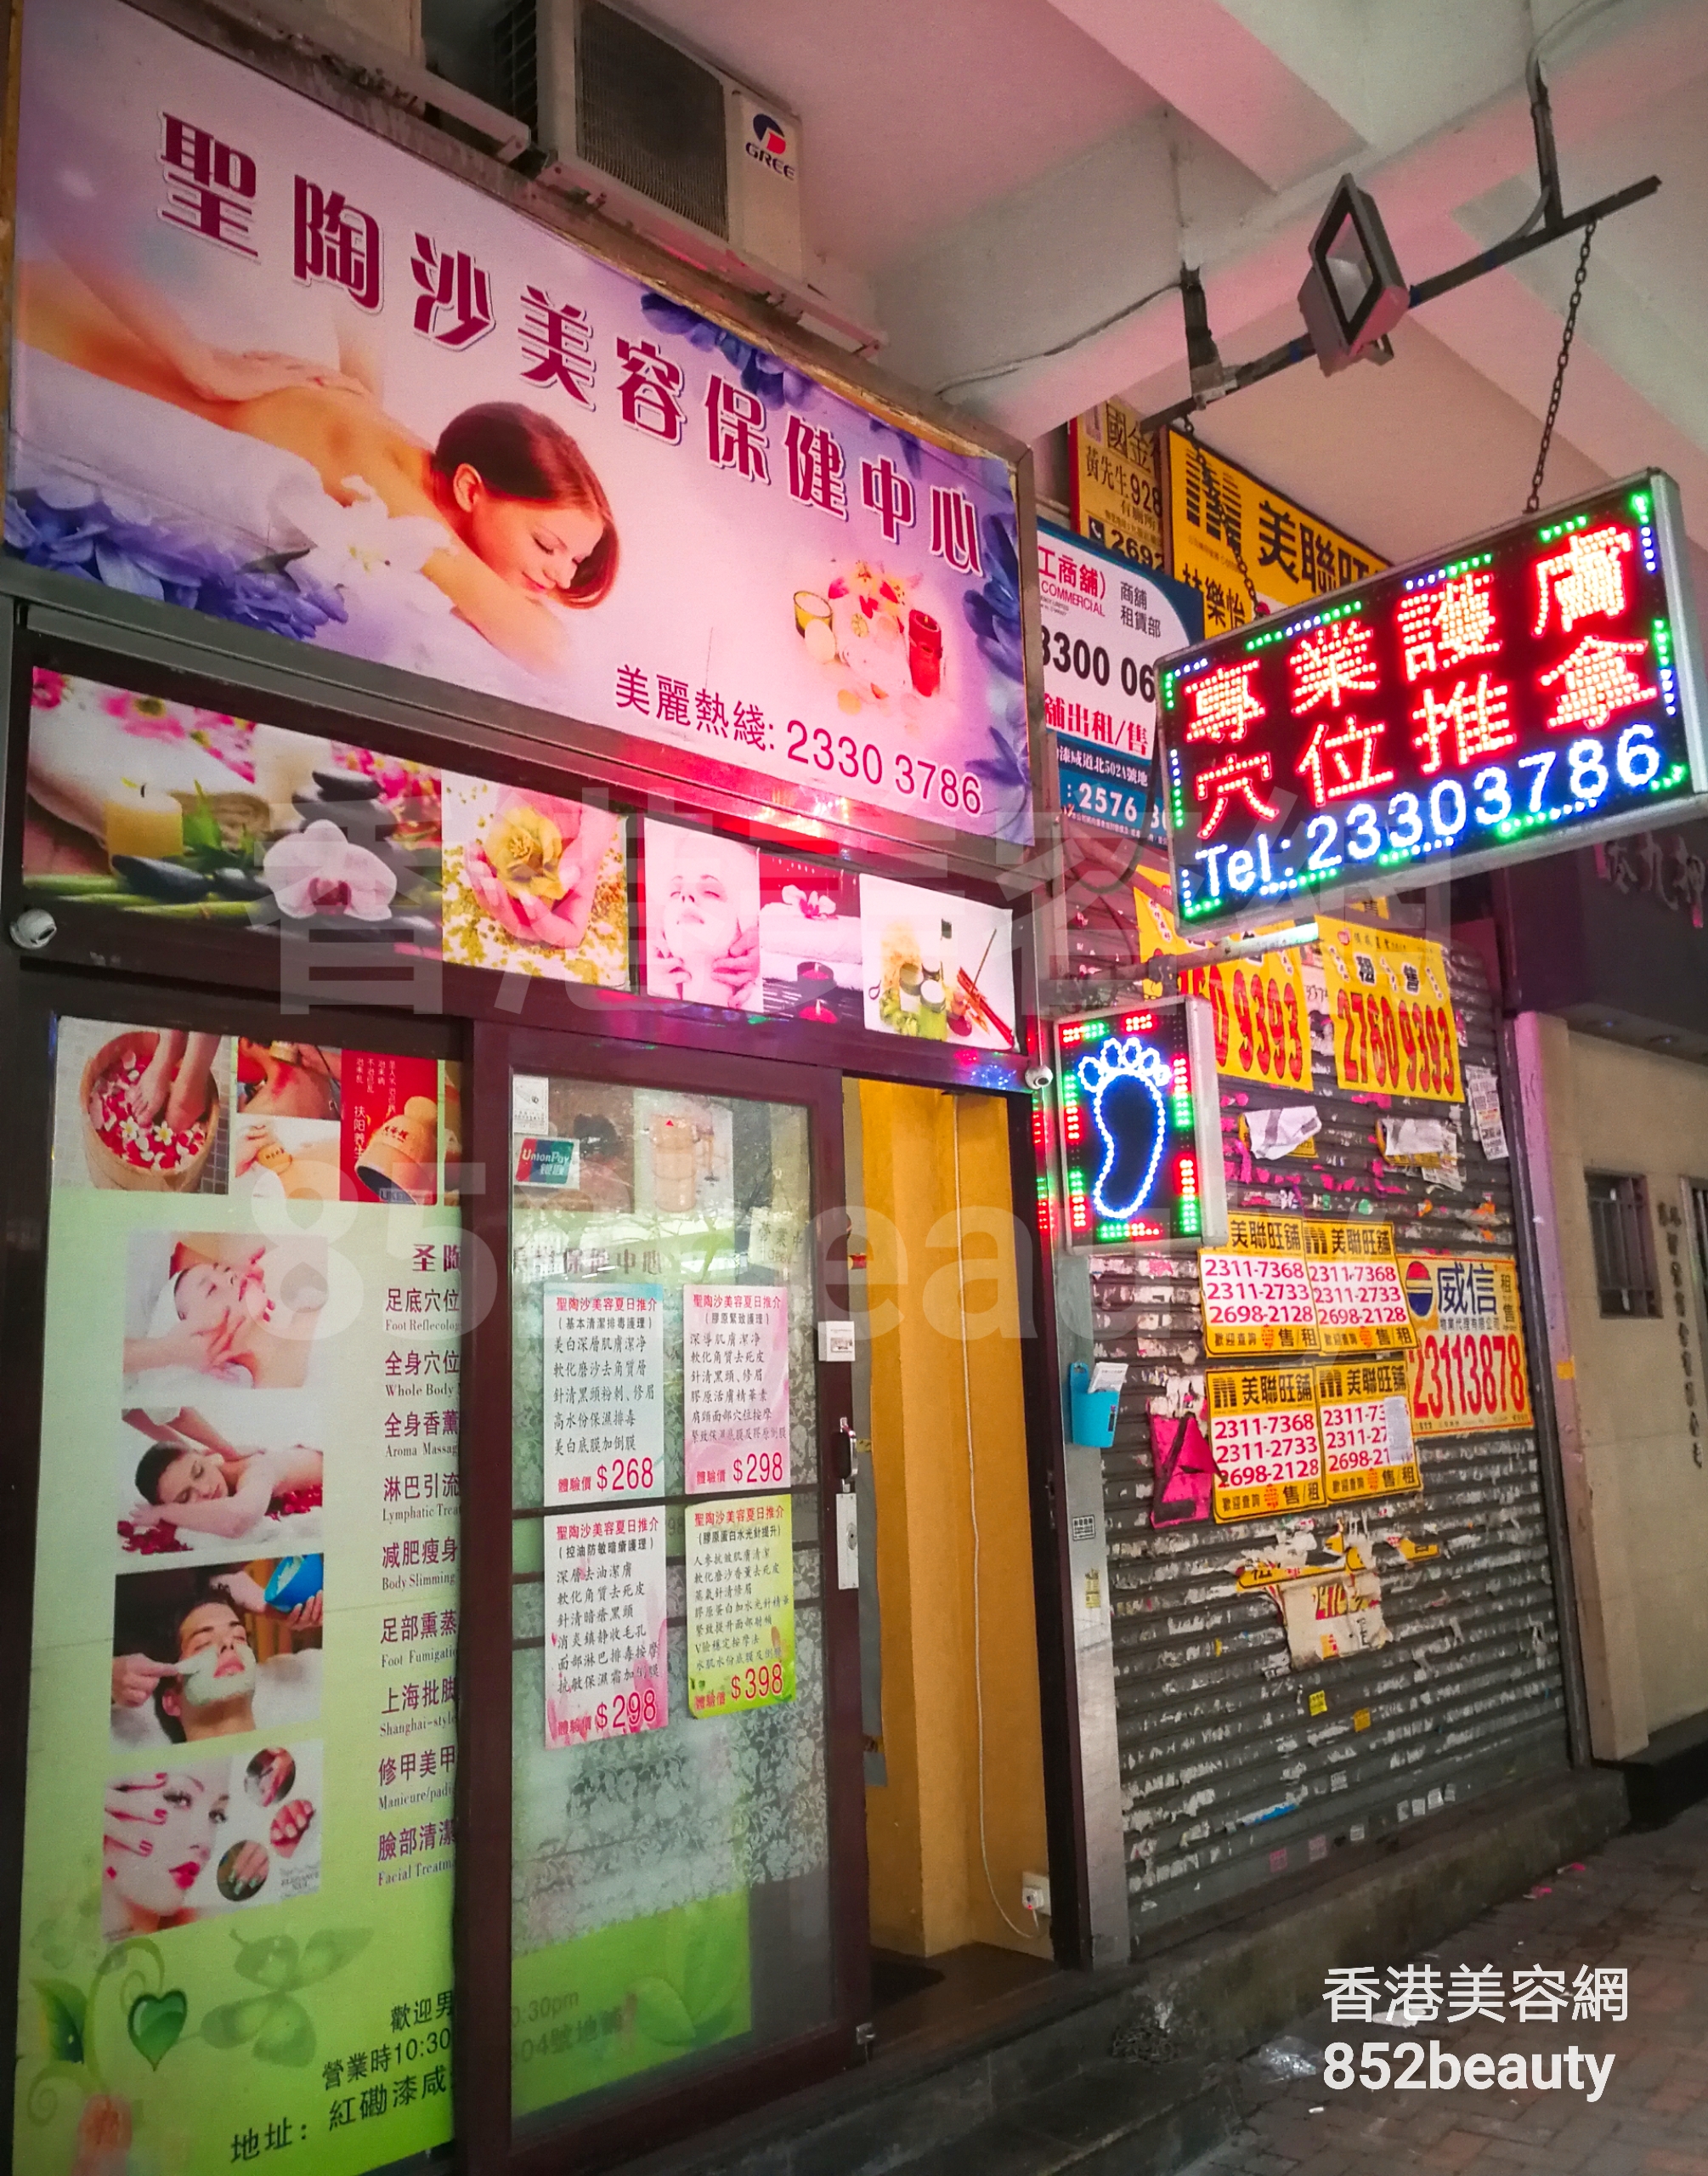 香港美容網 Hong Kong Beauty Salon 美容院 / 美容師: 聖陶沙美容纖體中心